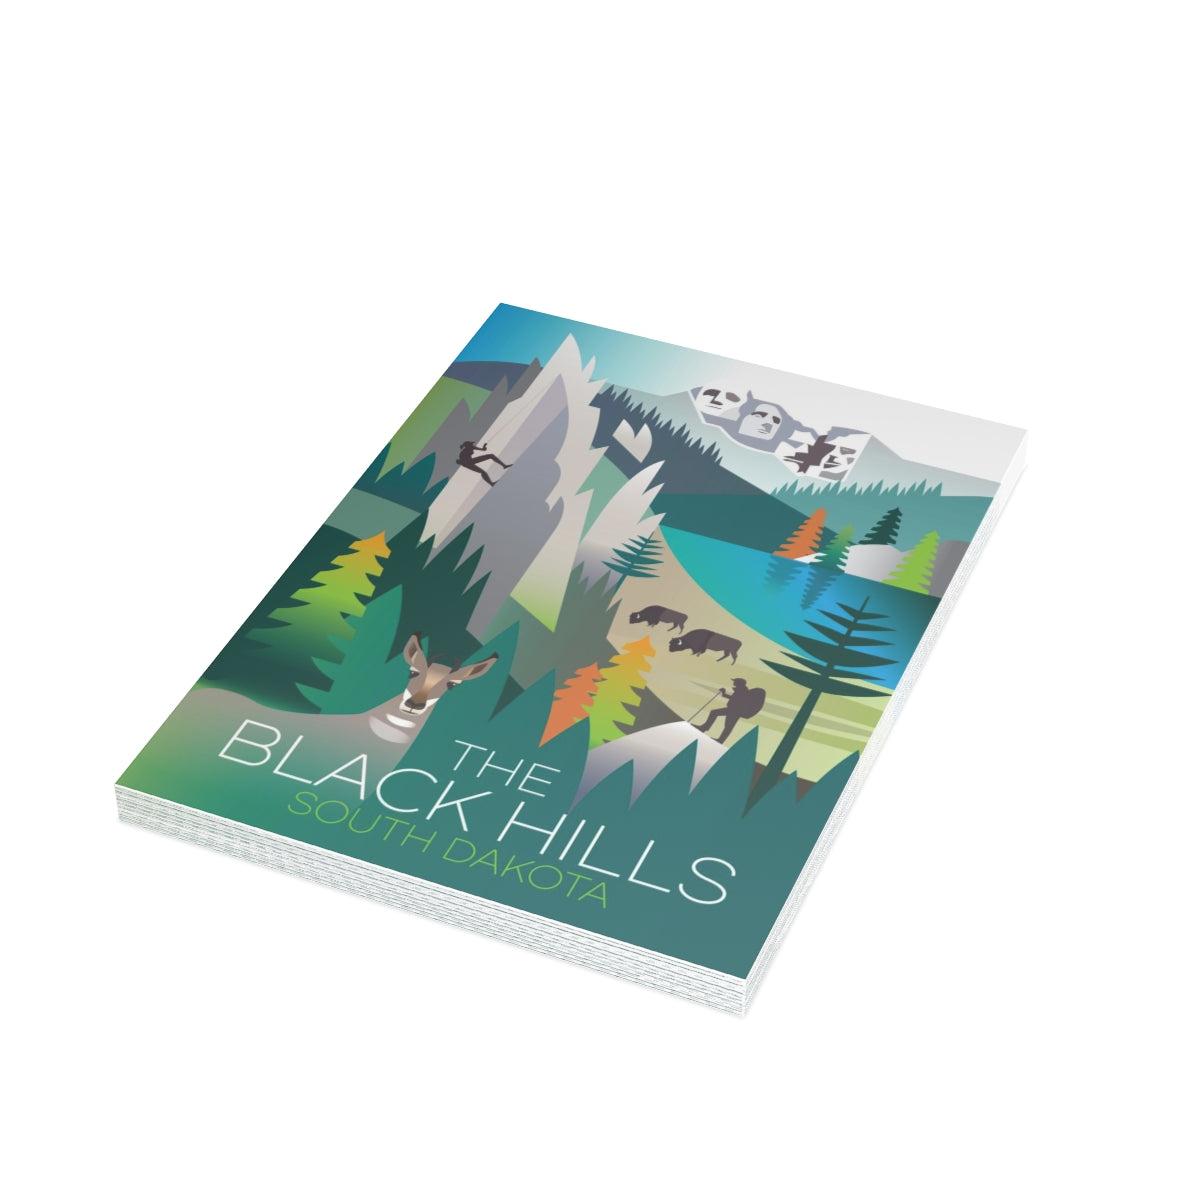 Cartes de notes mates pliées The Black Hills + enveloppes (10 pièces)